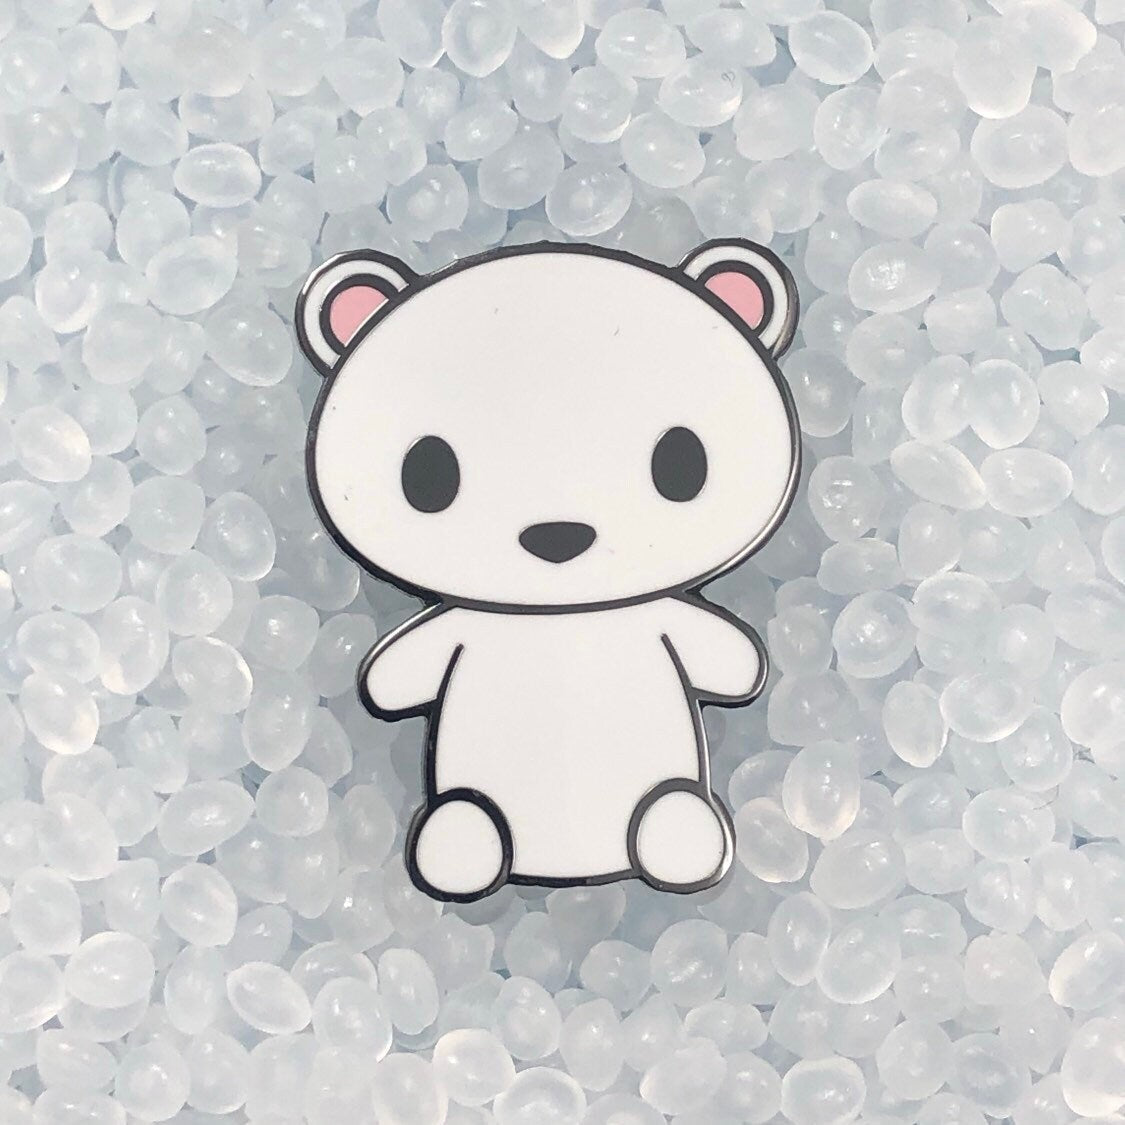 Cold Brew Polar Bear Hard Enamel Pin, Cute Cartoon Polar Bear Pin, Polar Bear Cartoon Art, Polar Bear Gift, Polar Bear Pin